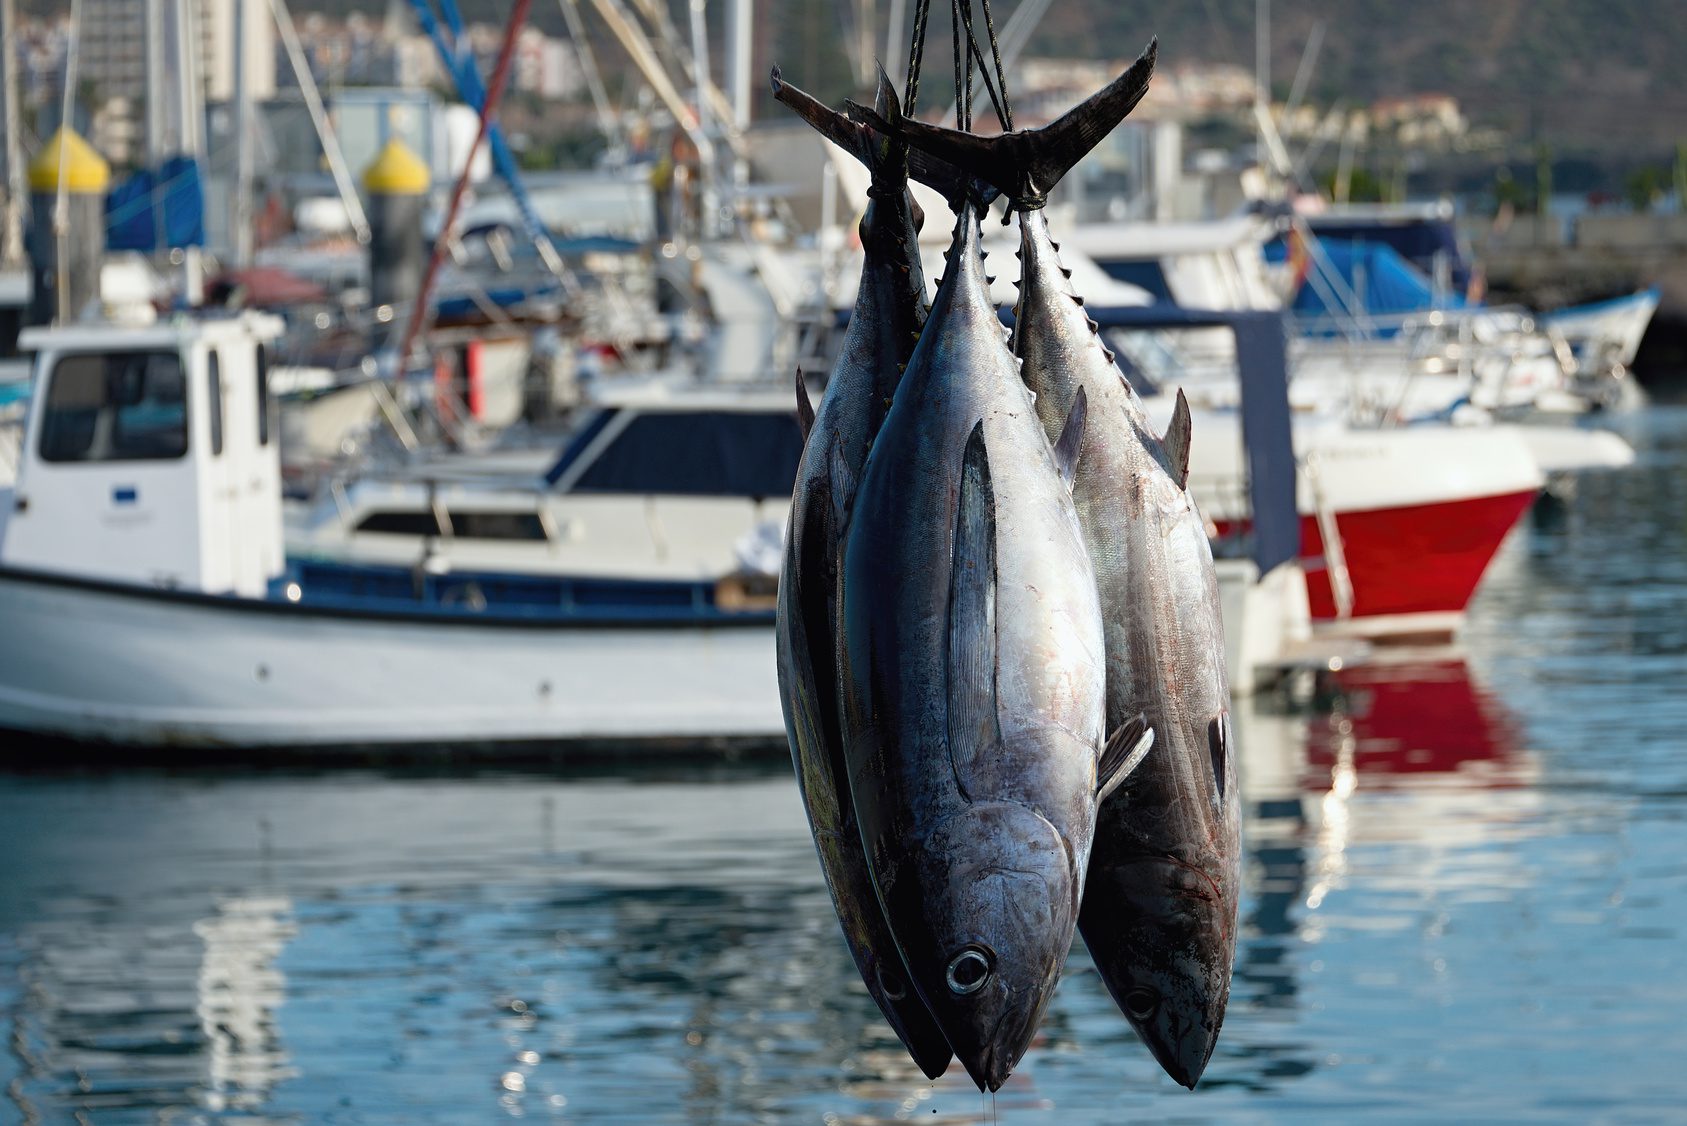 Pesca illegale al tonno rosso nel Cilento: Legambiente chiede maggiori controlli